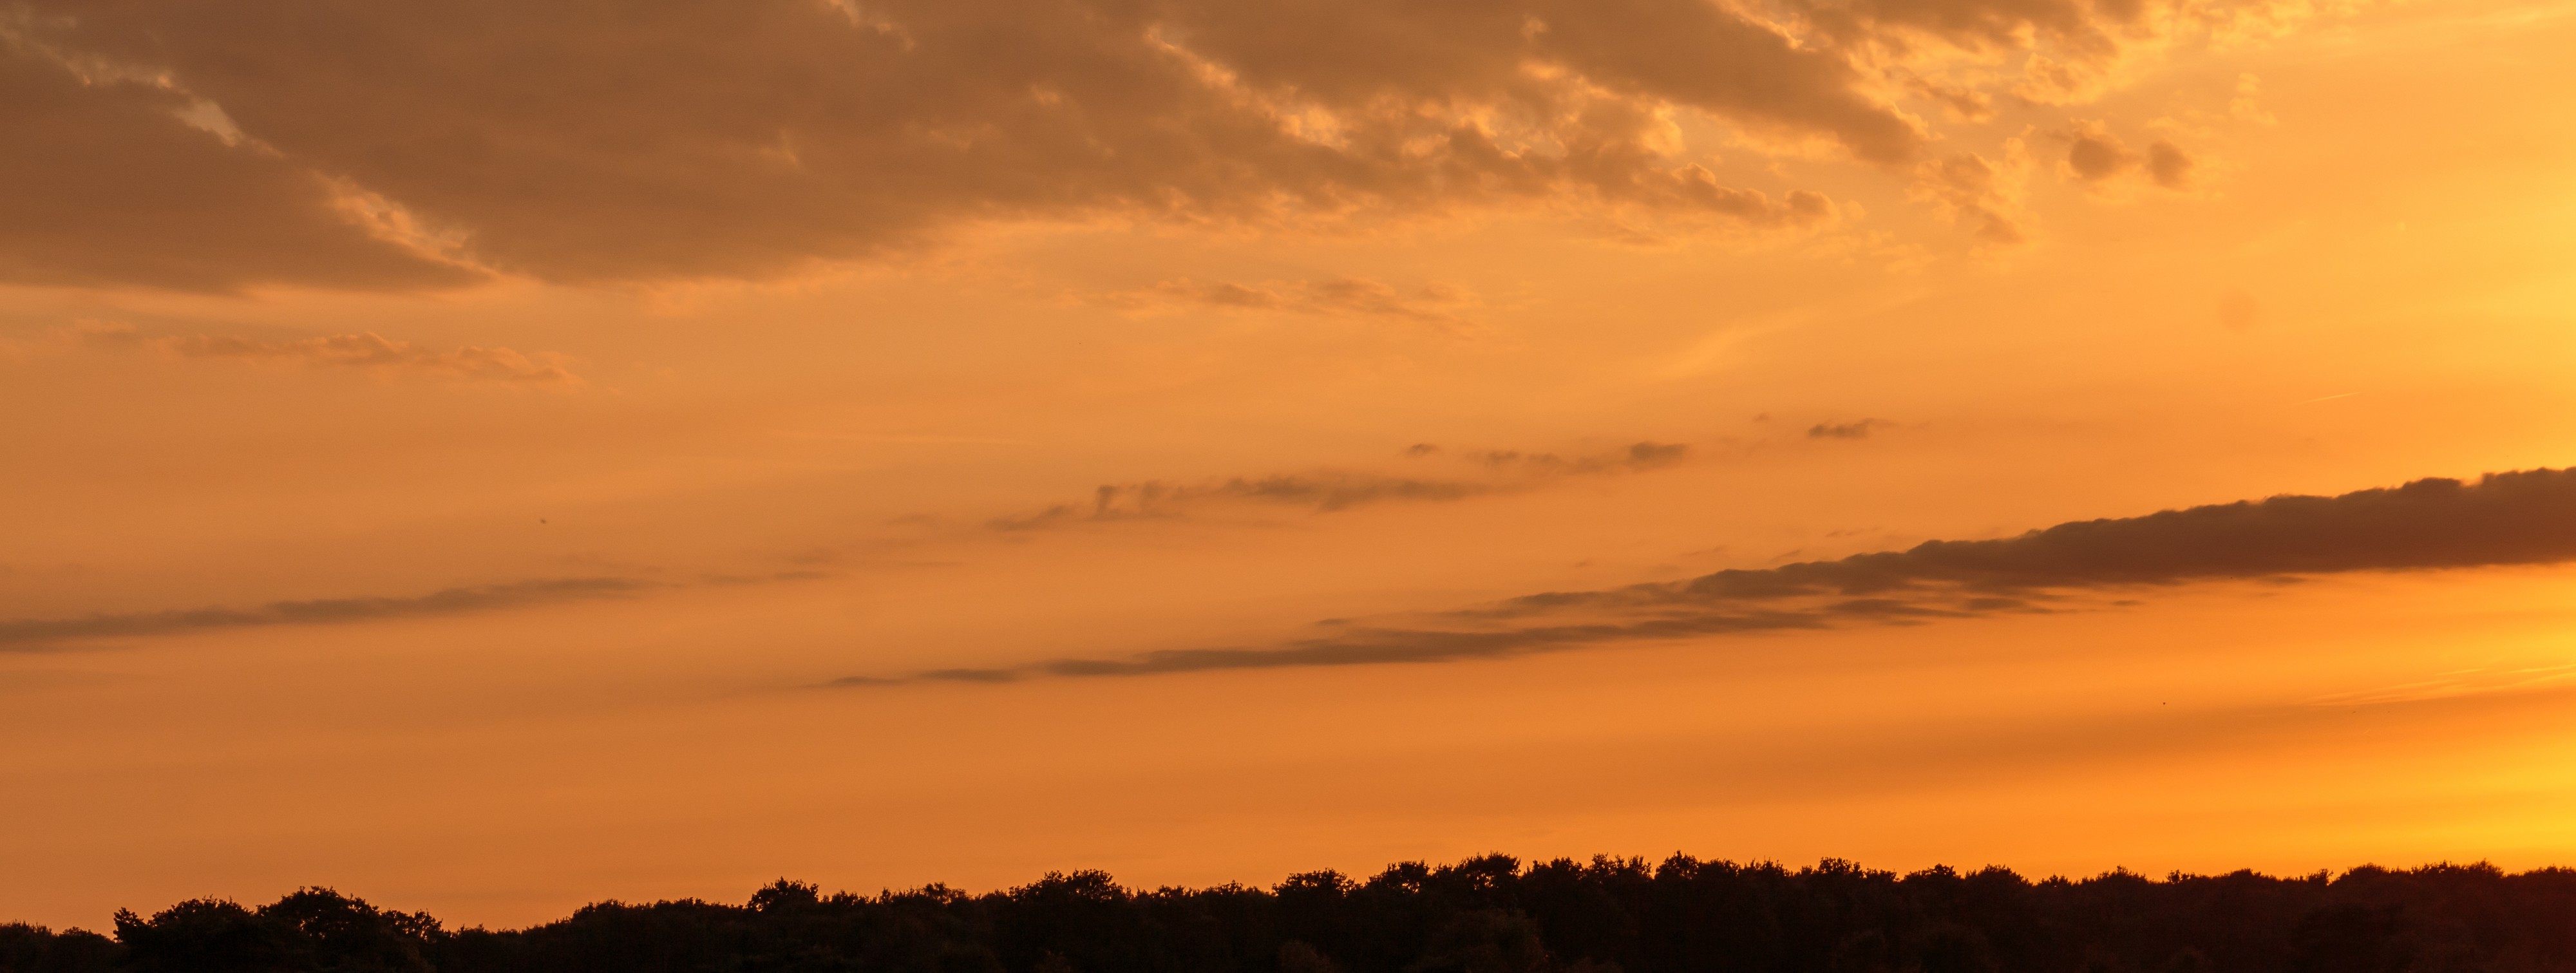 Prachtige zonsondergang. Locatie, natuurgebied Delleboersterheide – Catspoele 03